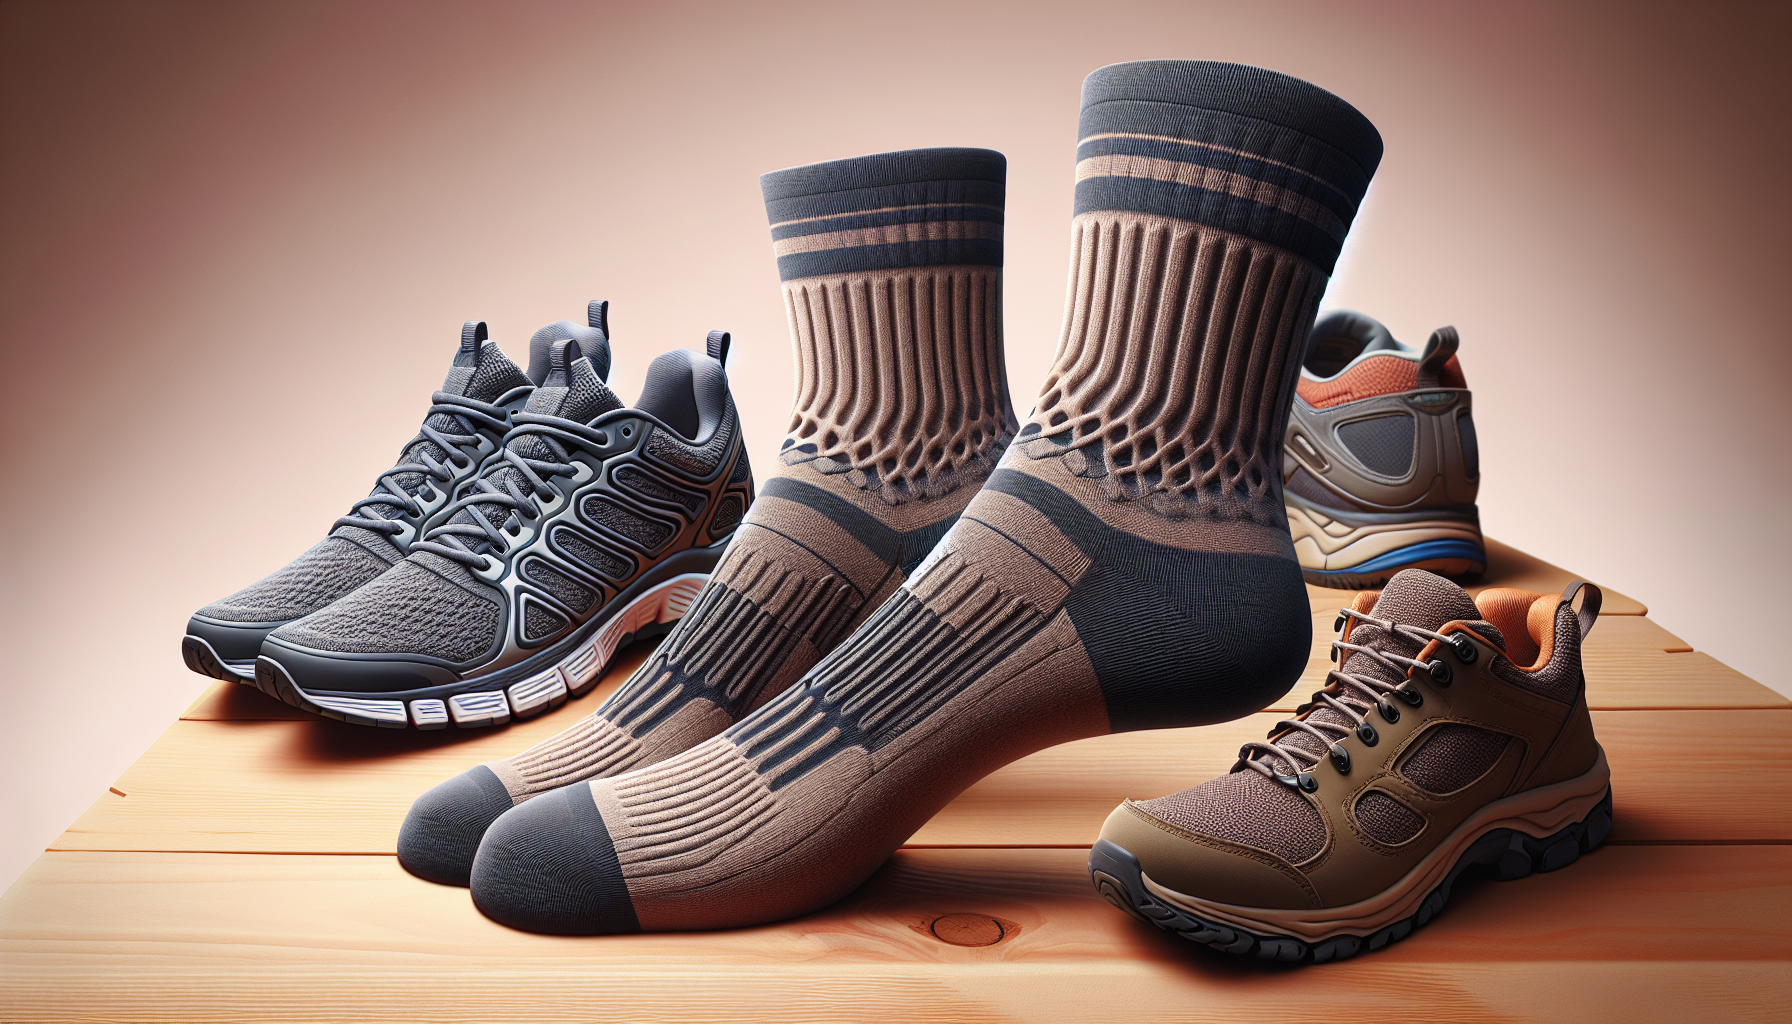 Balega socks | performance socks | moisture-wicking socks | anti-blister socks | running socks | athletic socks | comfort socks | durable socks | moisture management socks | quality socks